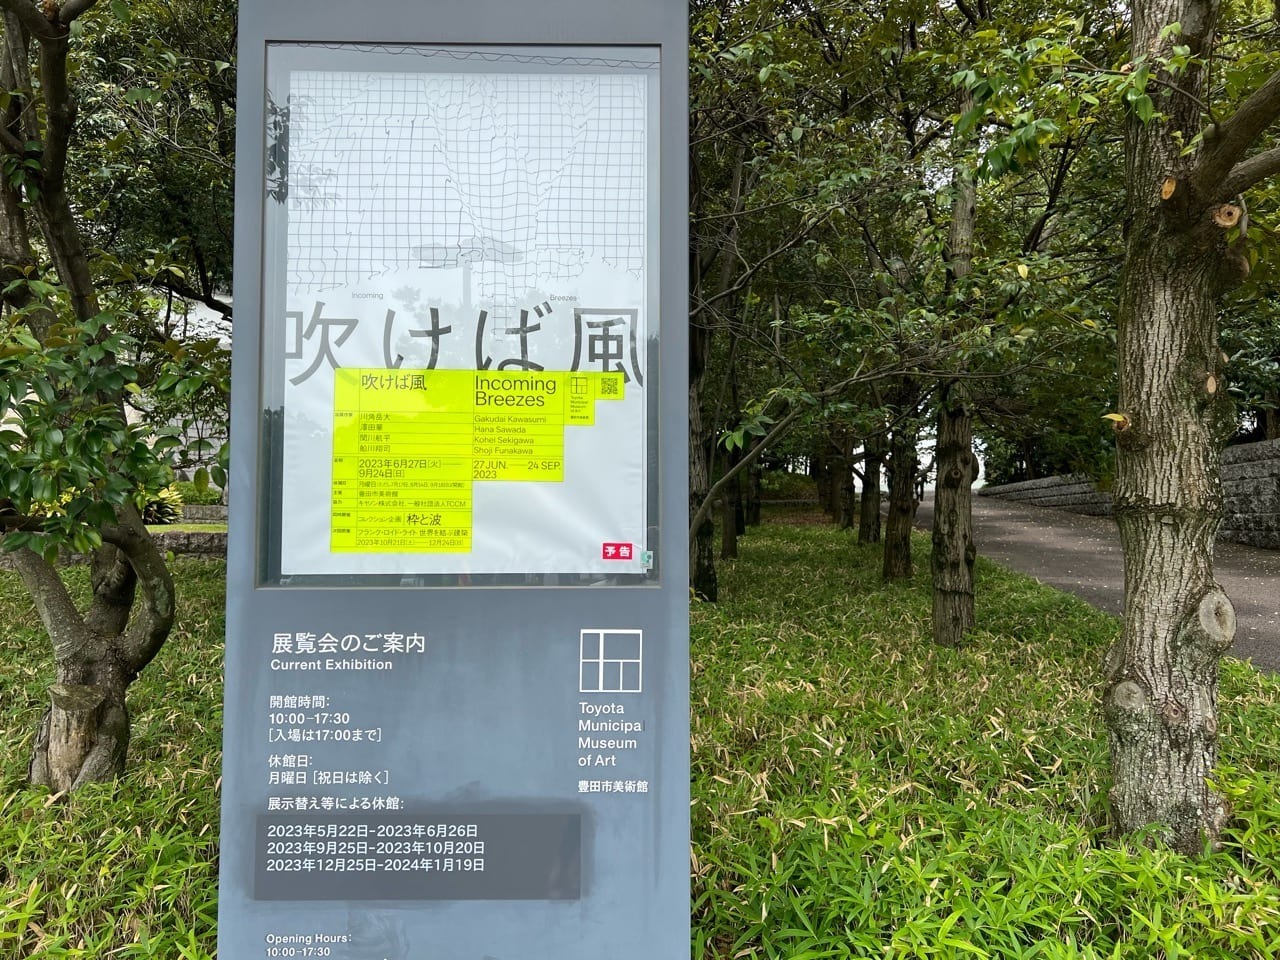 豊田市美術館で6月27日より始まった企画展「吹けば風」